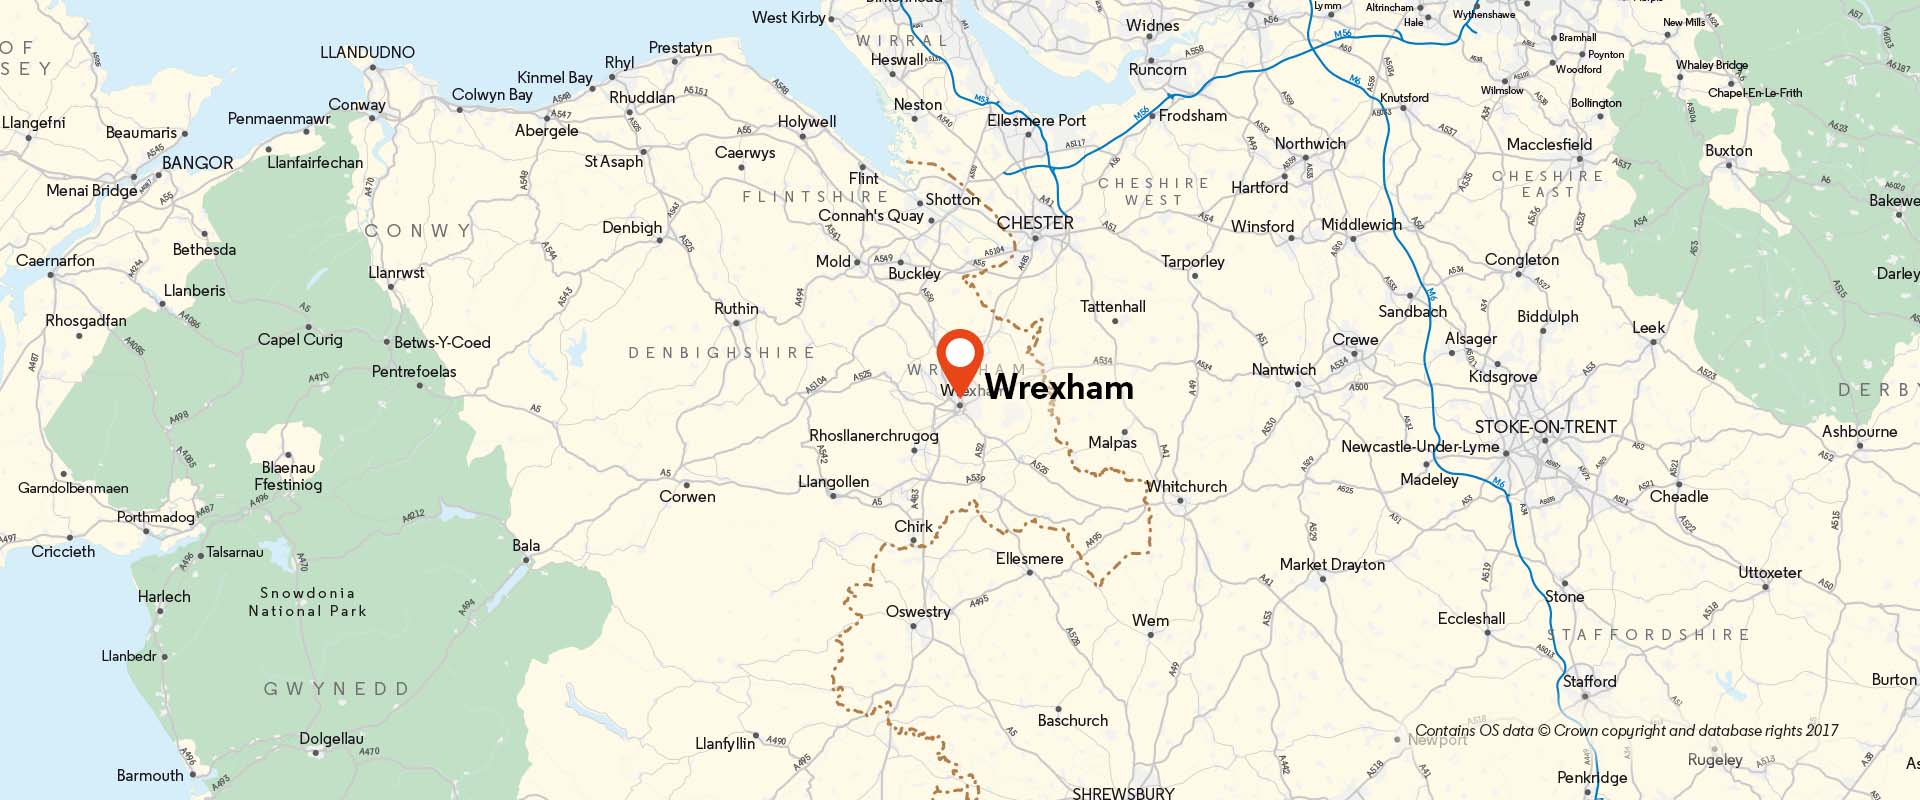 Wrexham CoM location